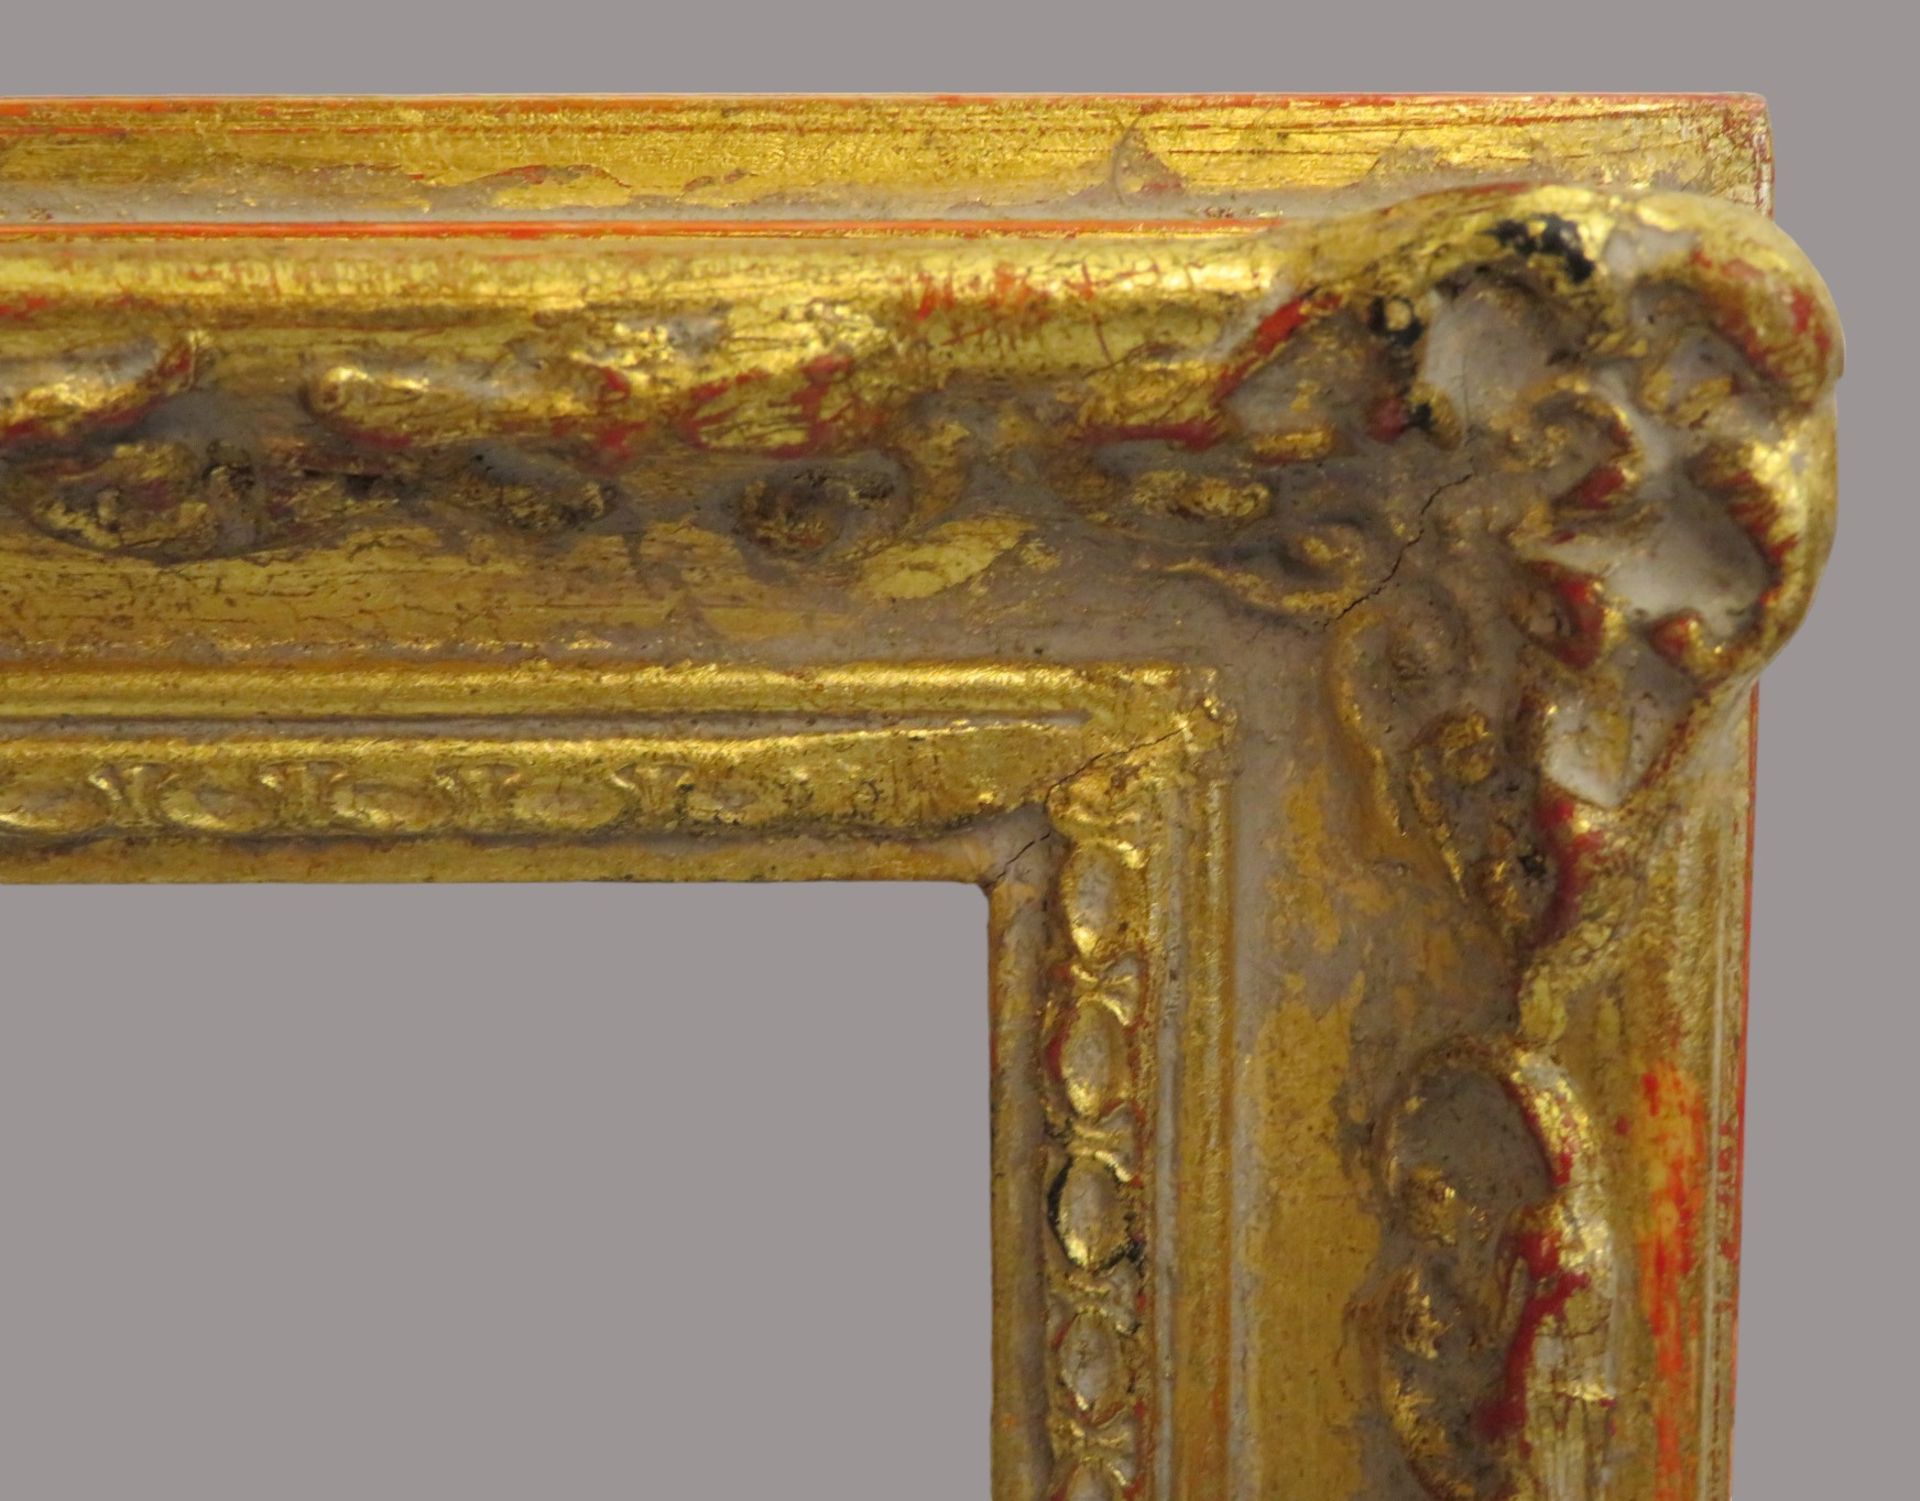 2 Barockstilrahmen, Stuck vergoldet, Innenmaß 28,2 x 21 cm, Außenmaß 34,5 x 27,5 cm. - Bild 2 aus 2